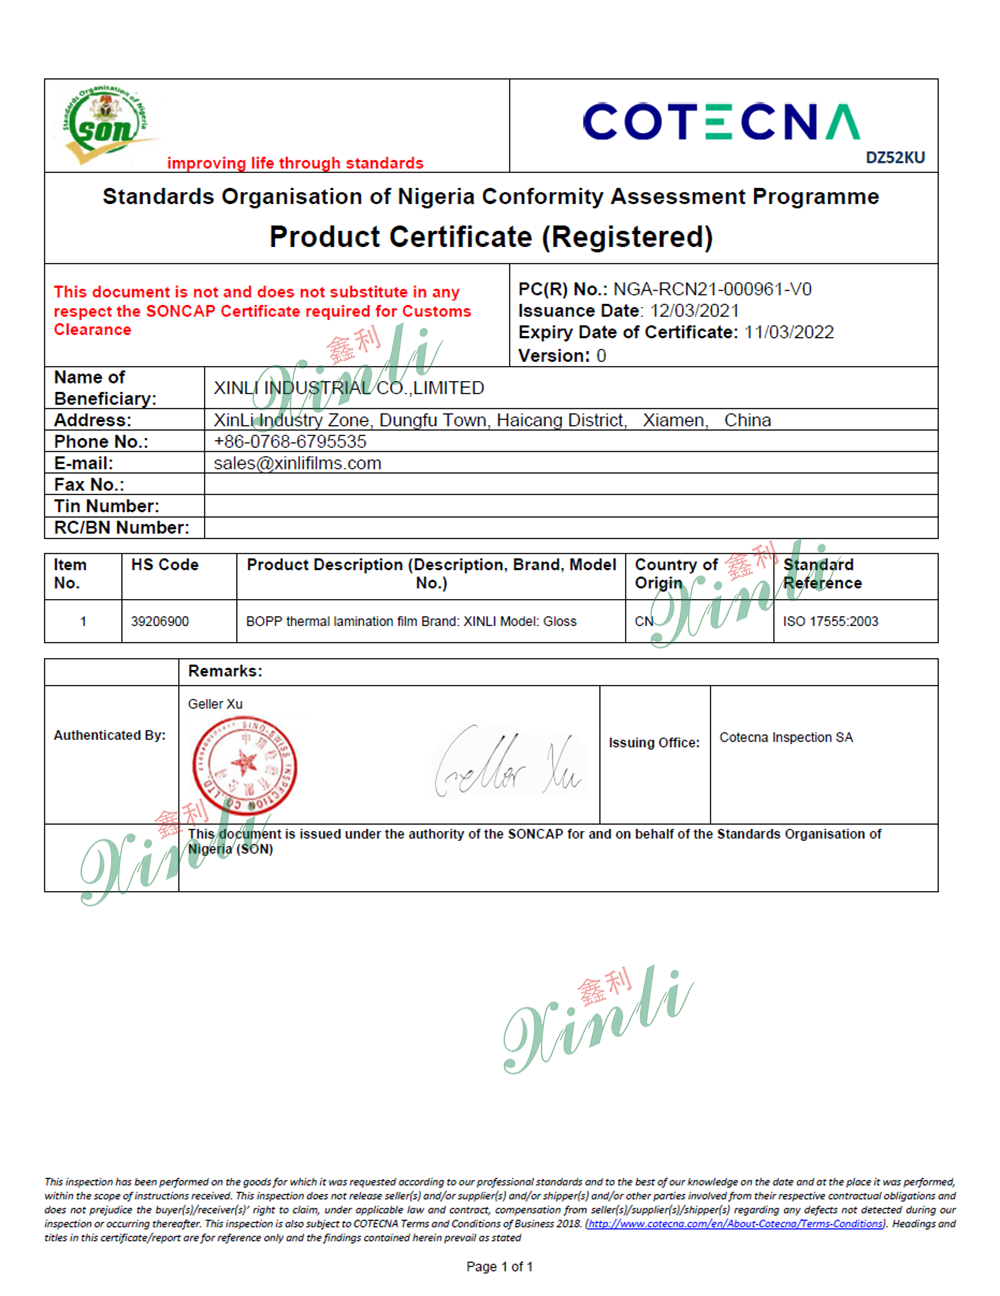 Certificat PC et Soncap pour le marché du Nigéria